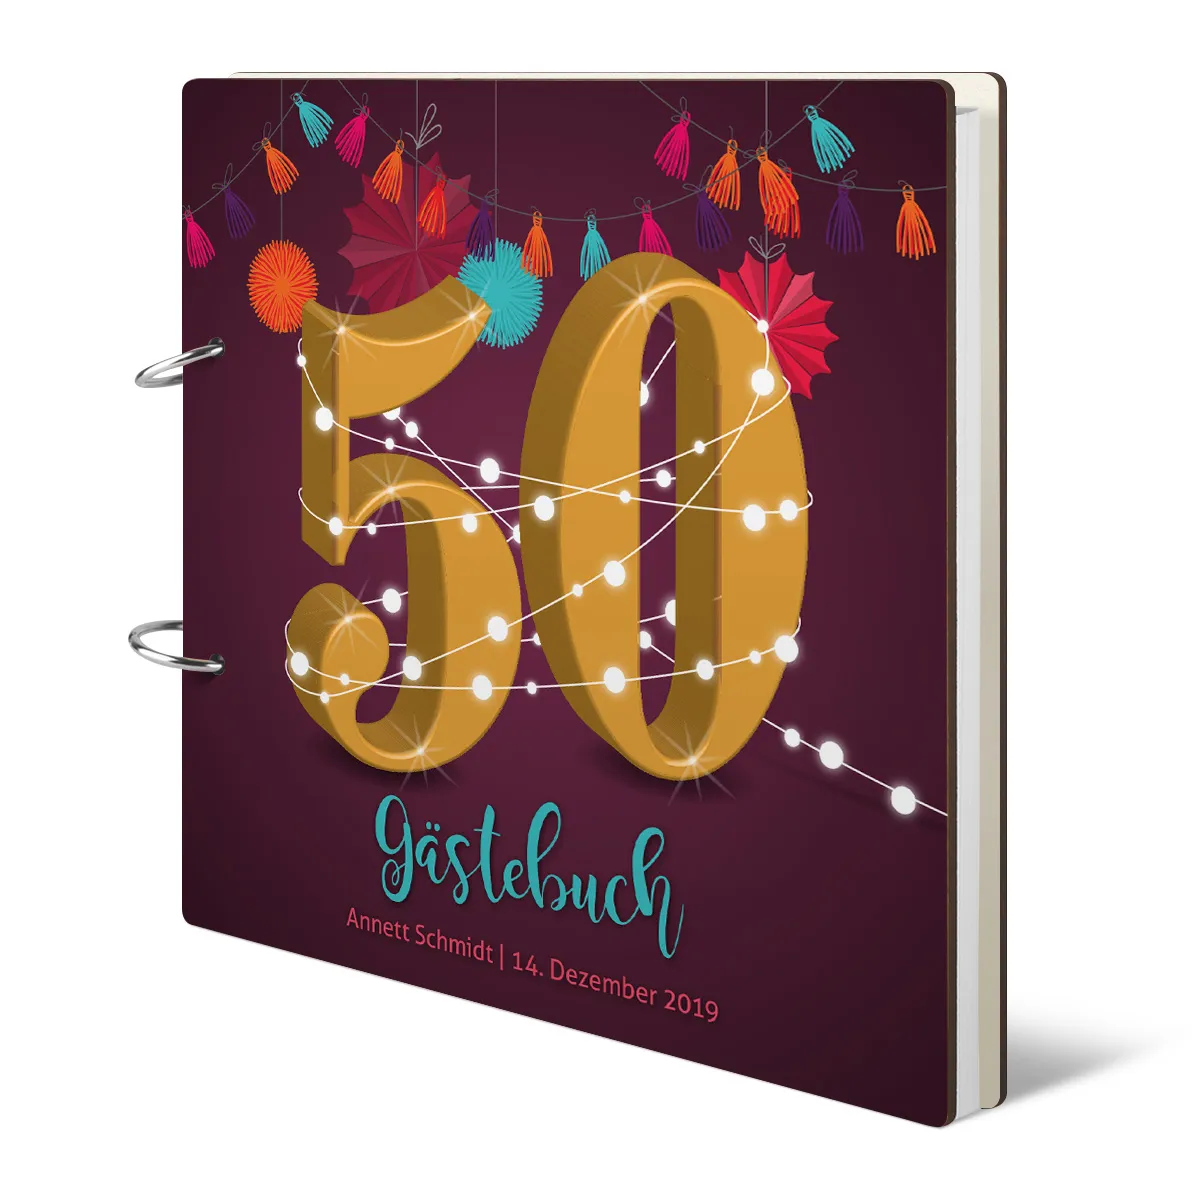 Personalisiertes Geburtstag Gästebuch 50 Jahre - Girlande